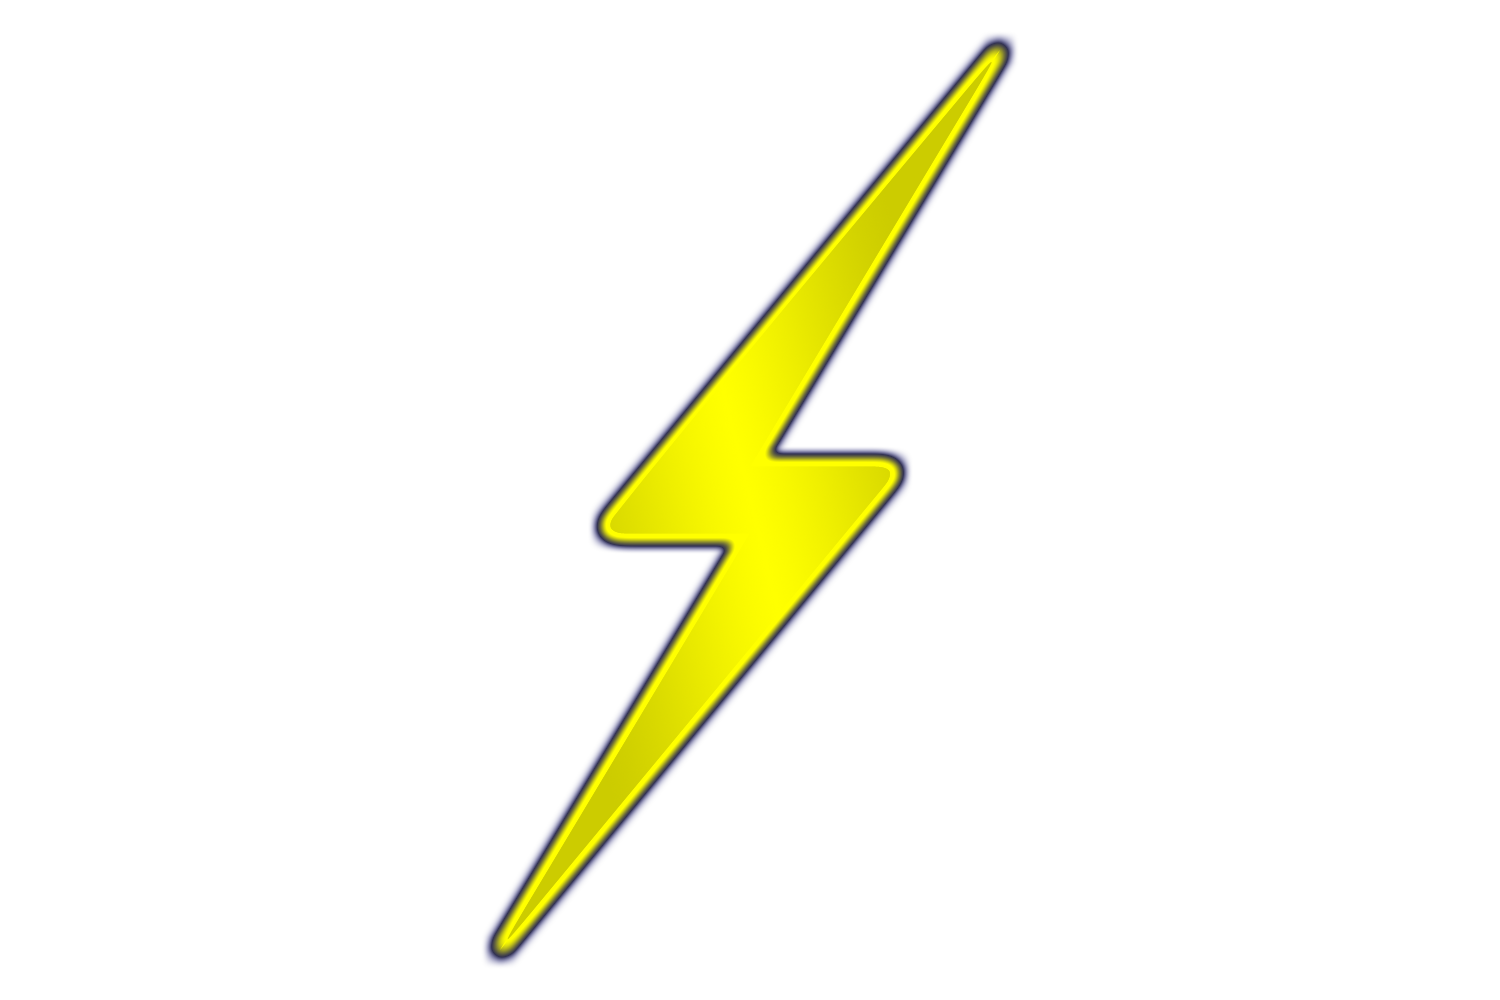 Lightning bolt clip art at vector clip art 2 image